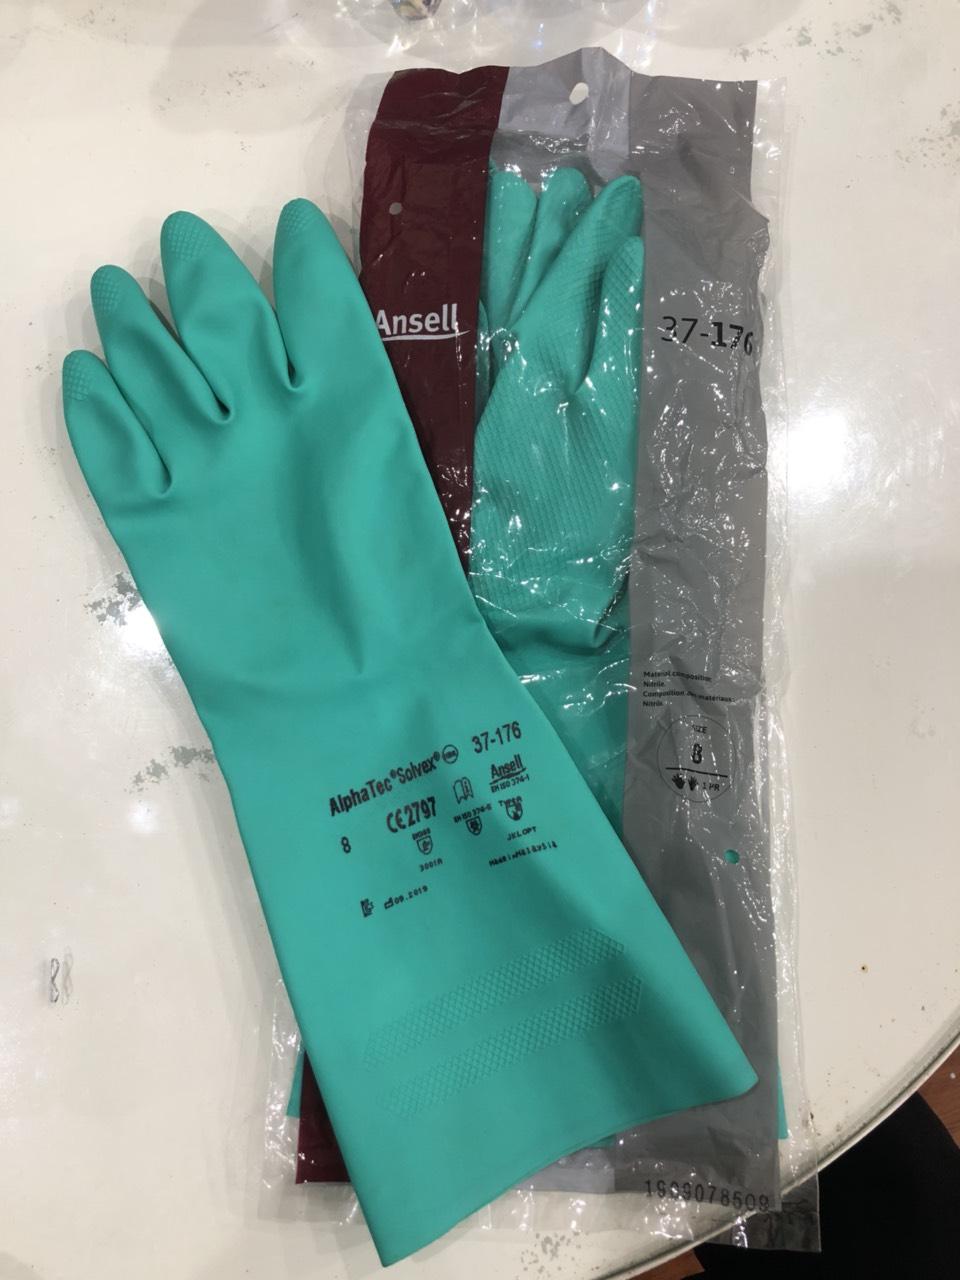 găng tay chống hóa chất ansell alphatec 37-176